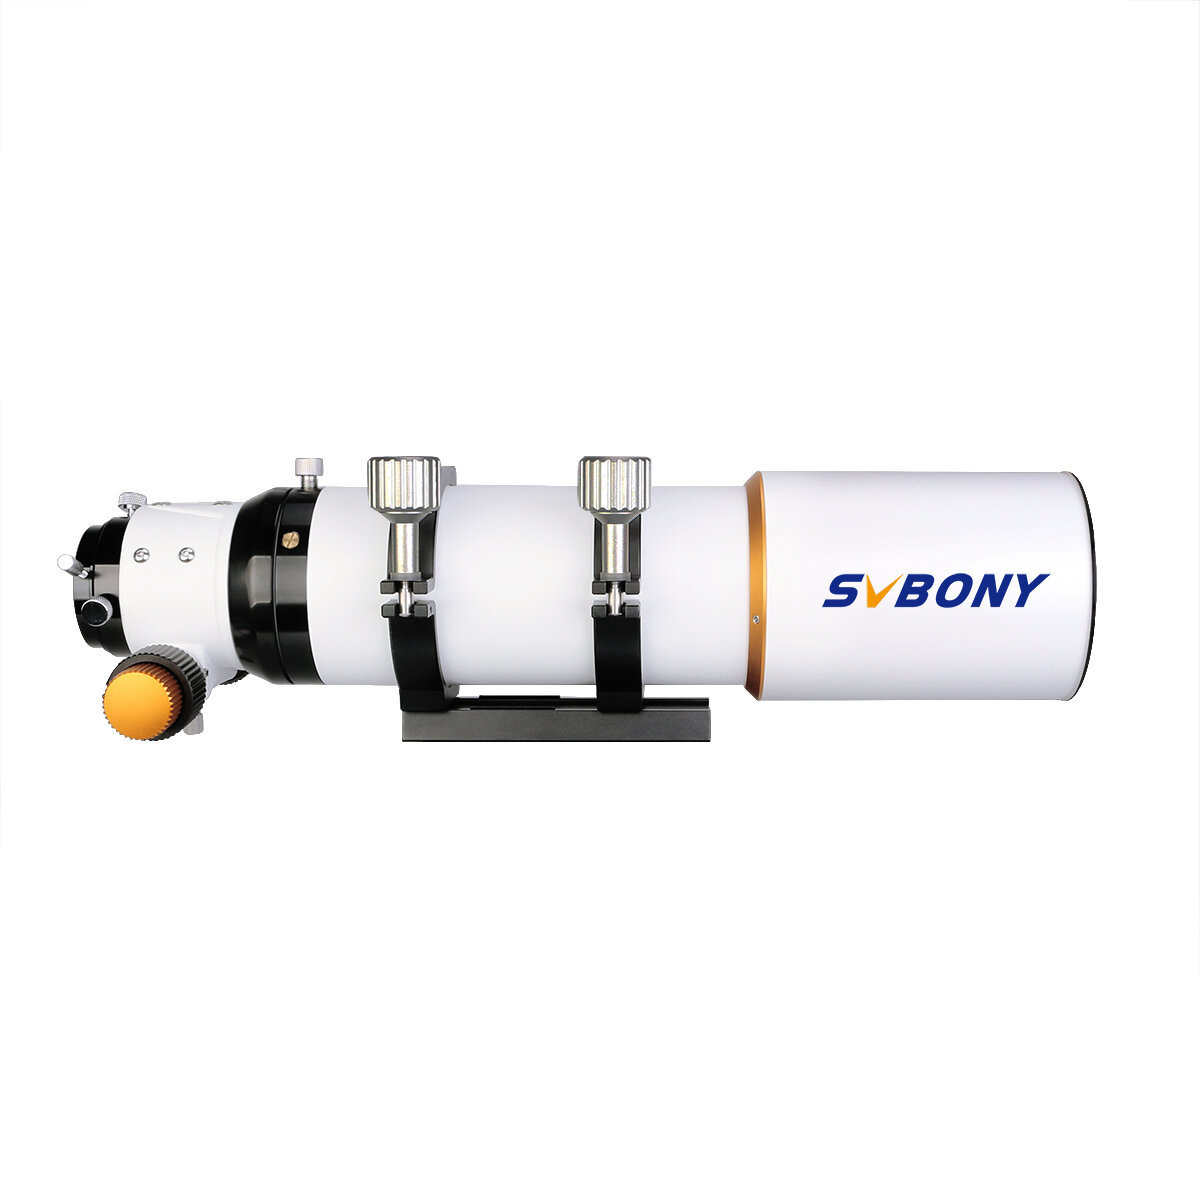 Refraktorcső SVBONY SV503 80ED F7 OTA achromatikus refraktor cső 2 hüvelykes kétsebességű fókuszáló kültéri asztrofizikai távcső